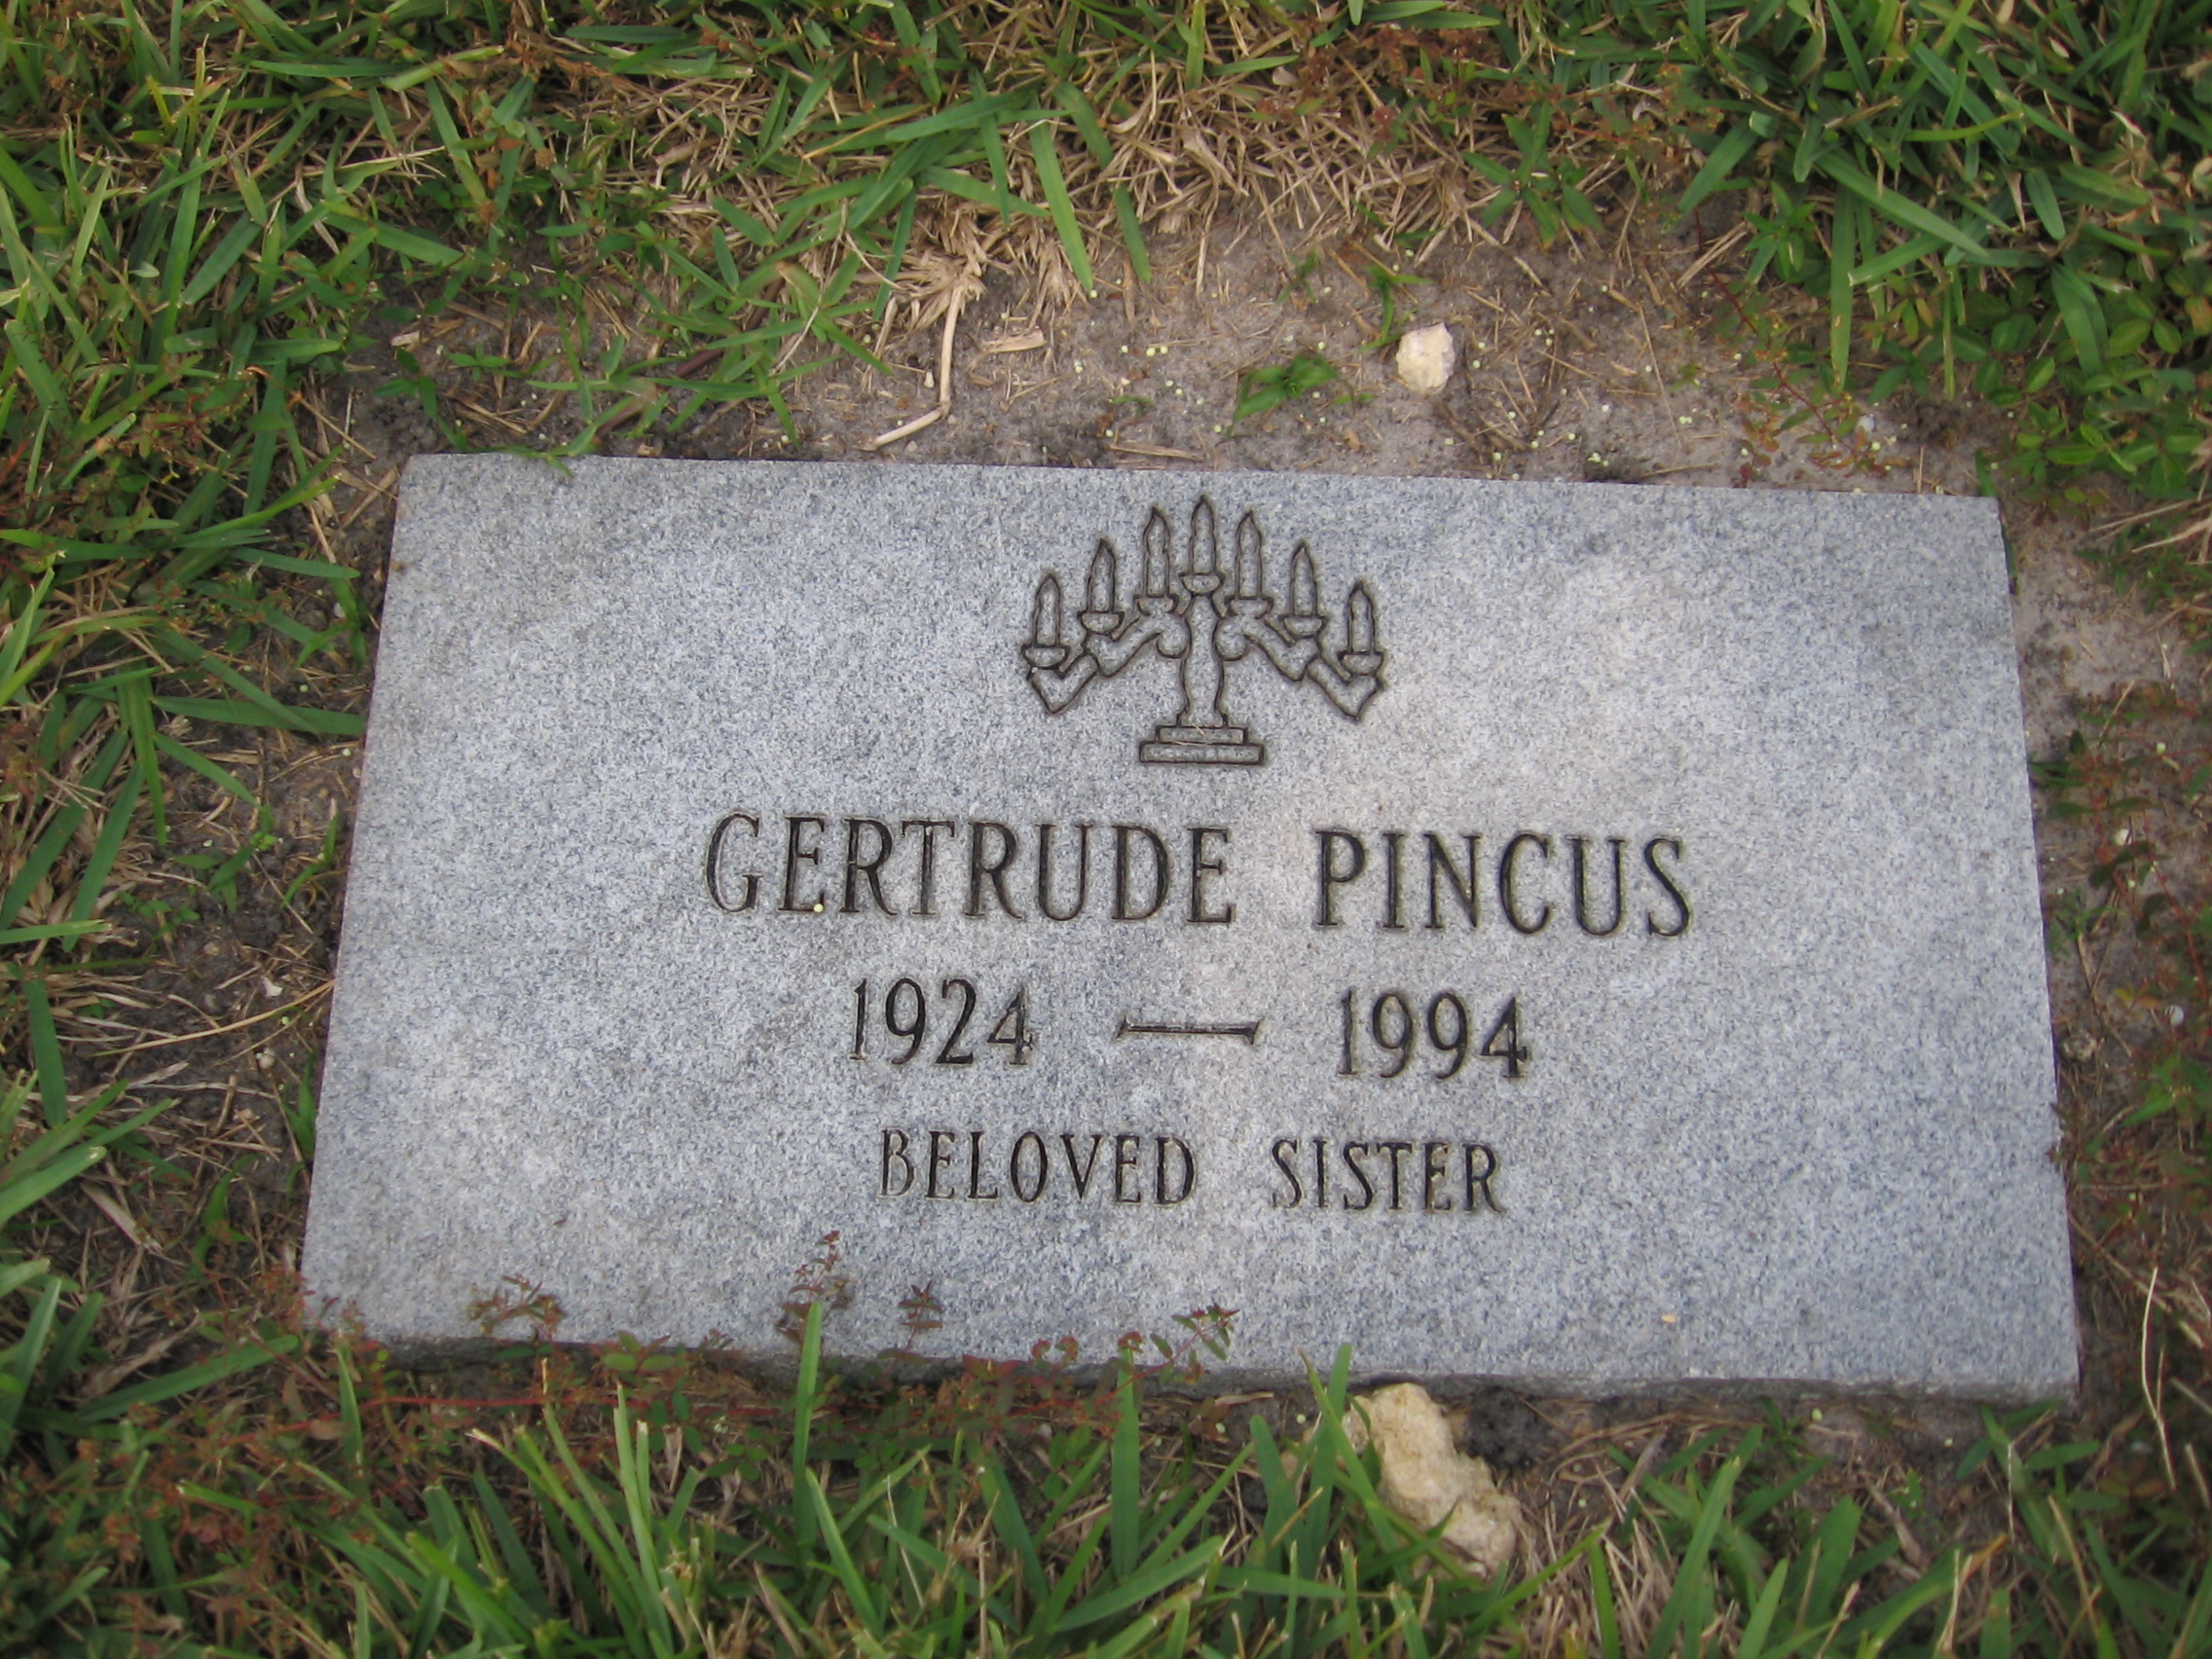 Gertrude Pincus